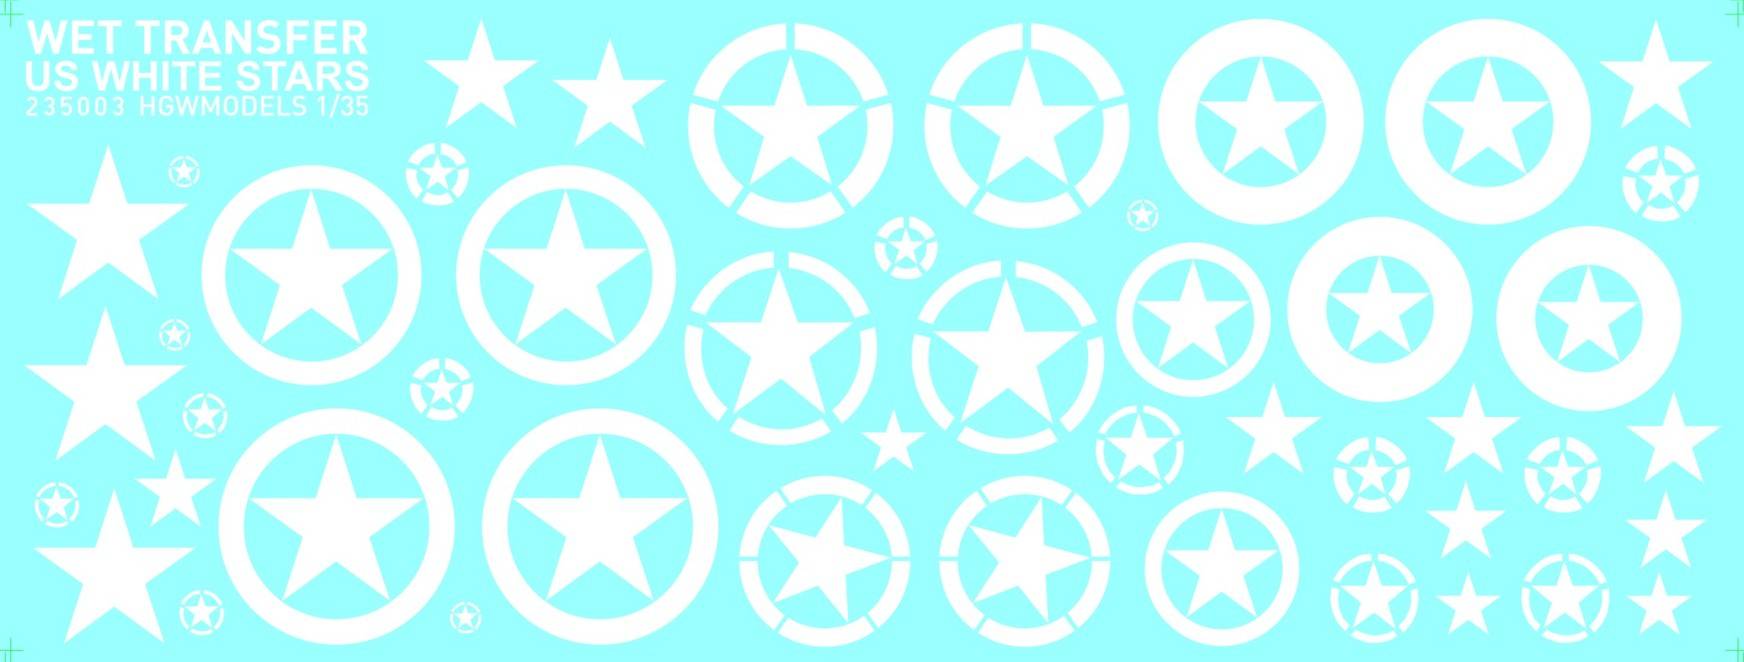 Accessoires - White Stars - US peut être utilisé pour différentes éche